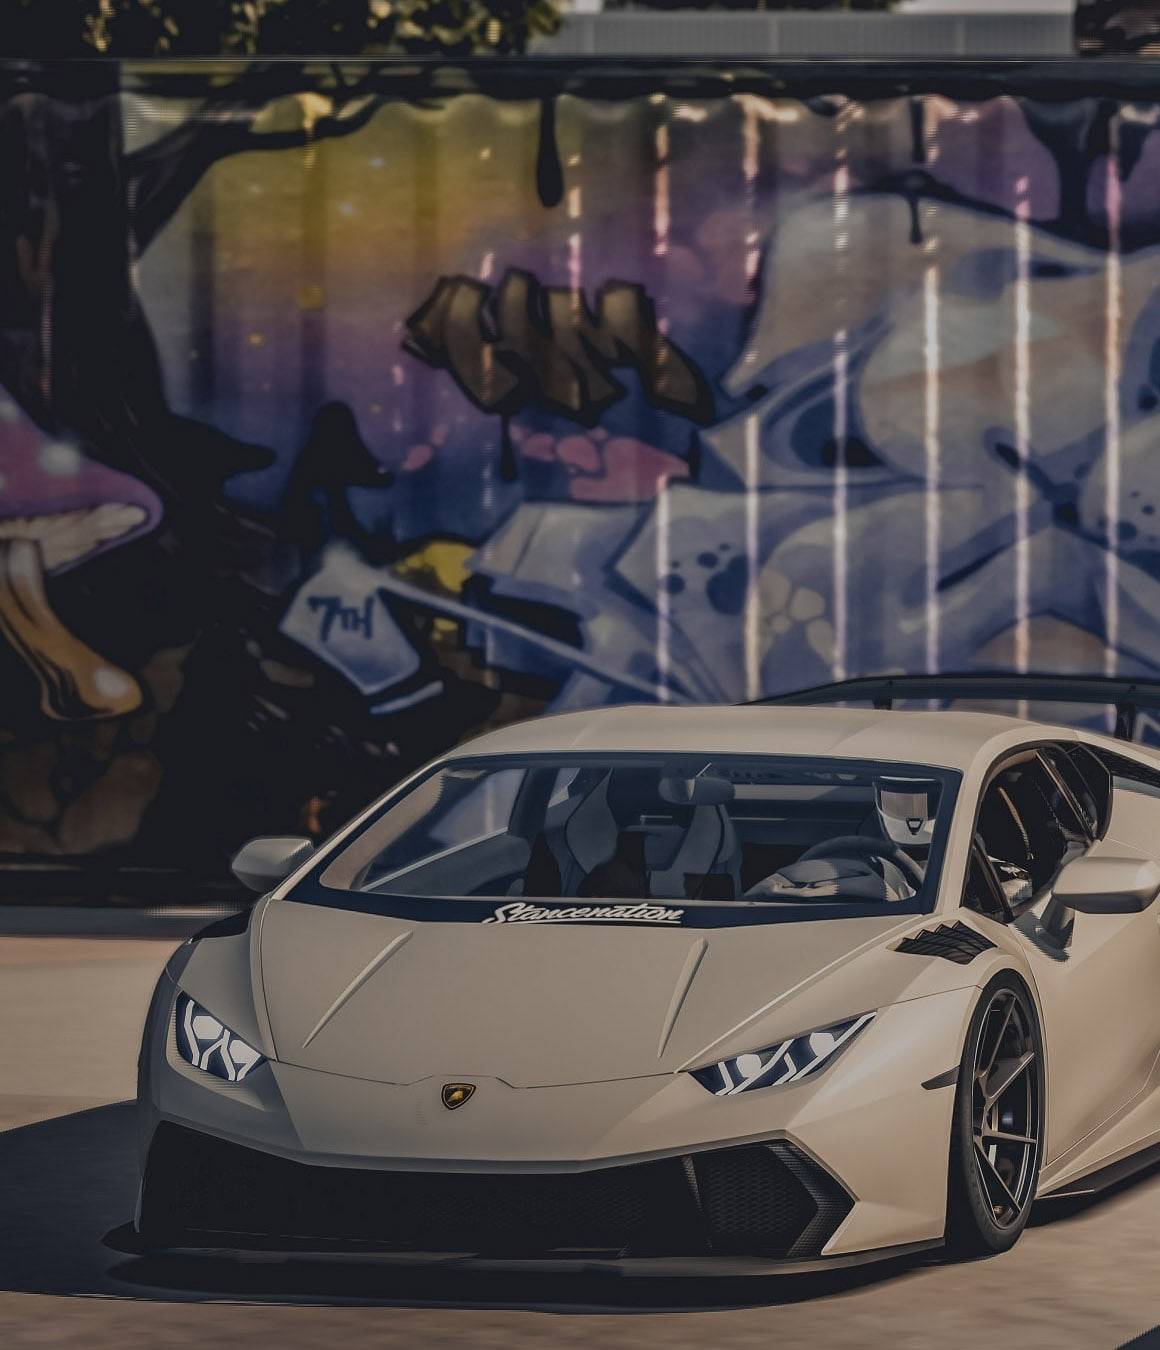 Compare Lamborghini insurance costs for all models